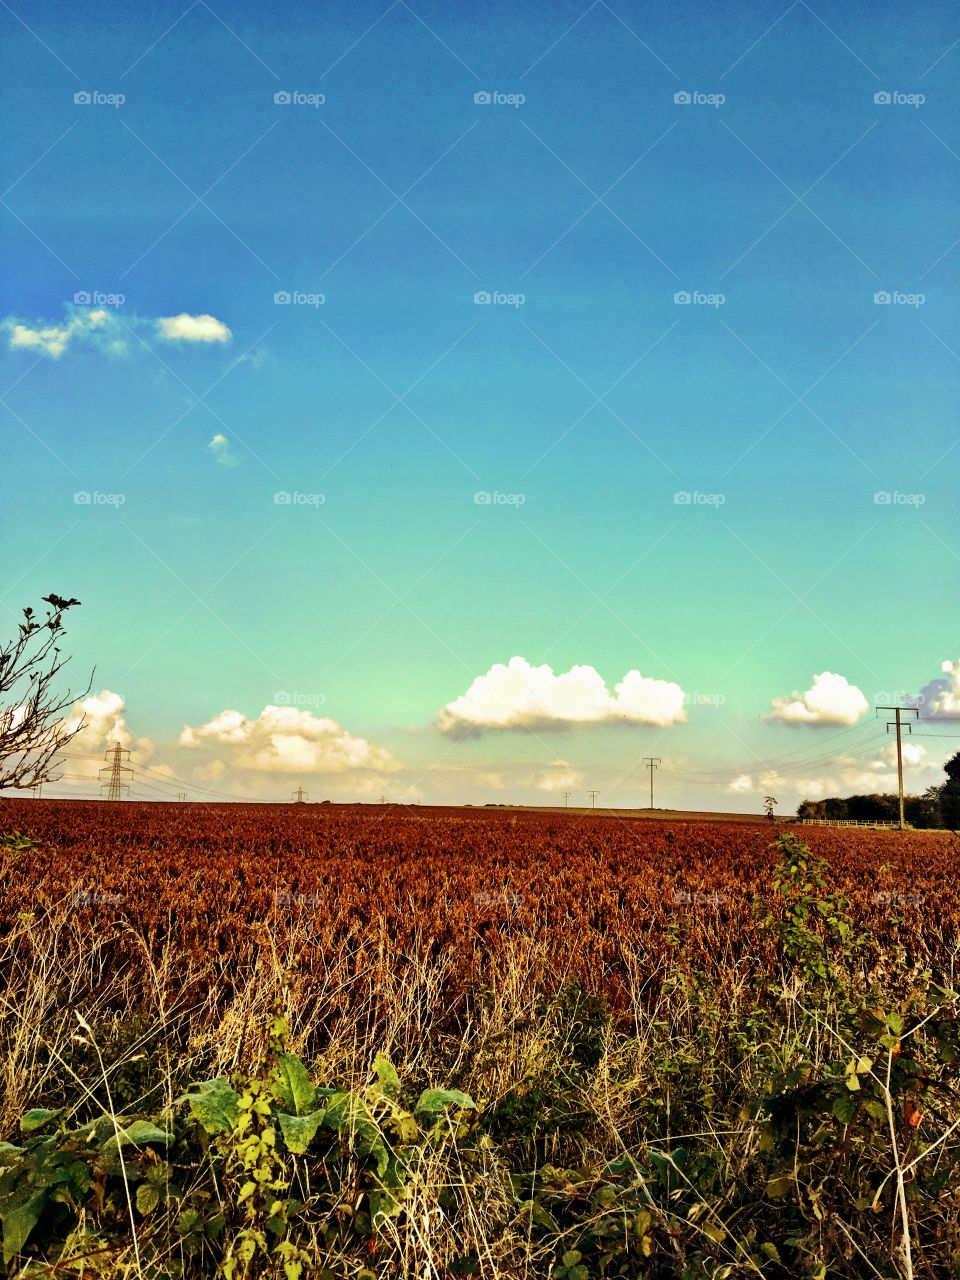 Farmers field in Autumn 